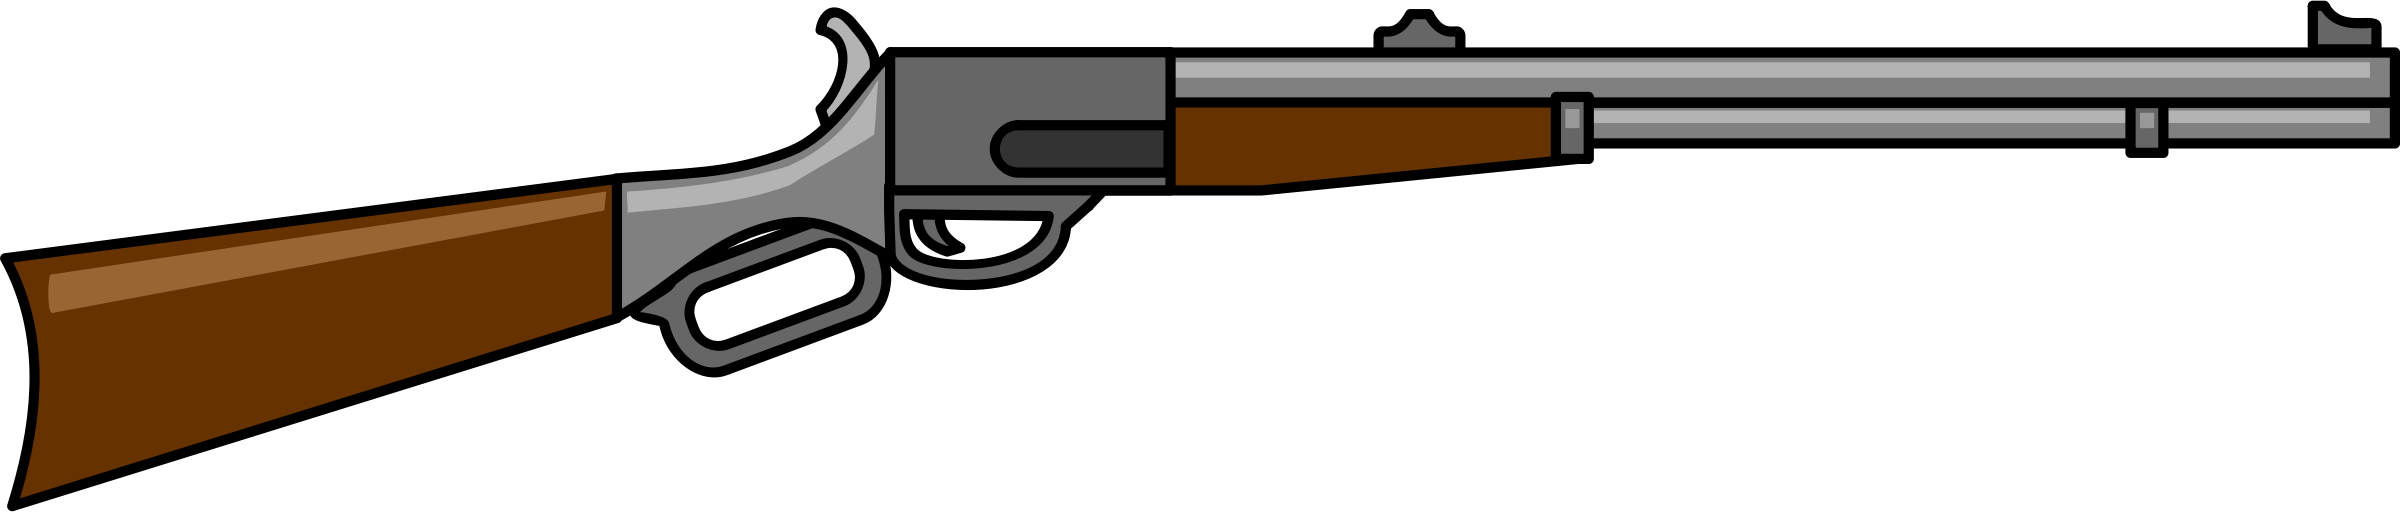 Cartoon Gun PNG Transparent Cartoon Gun.PNG Images. | PlusPNG